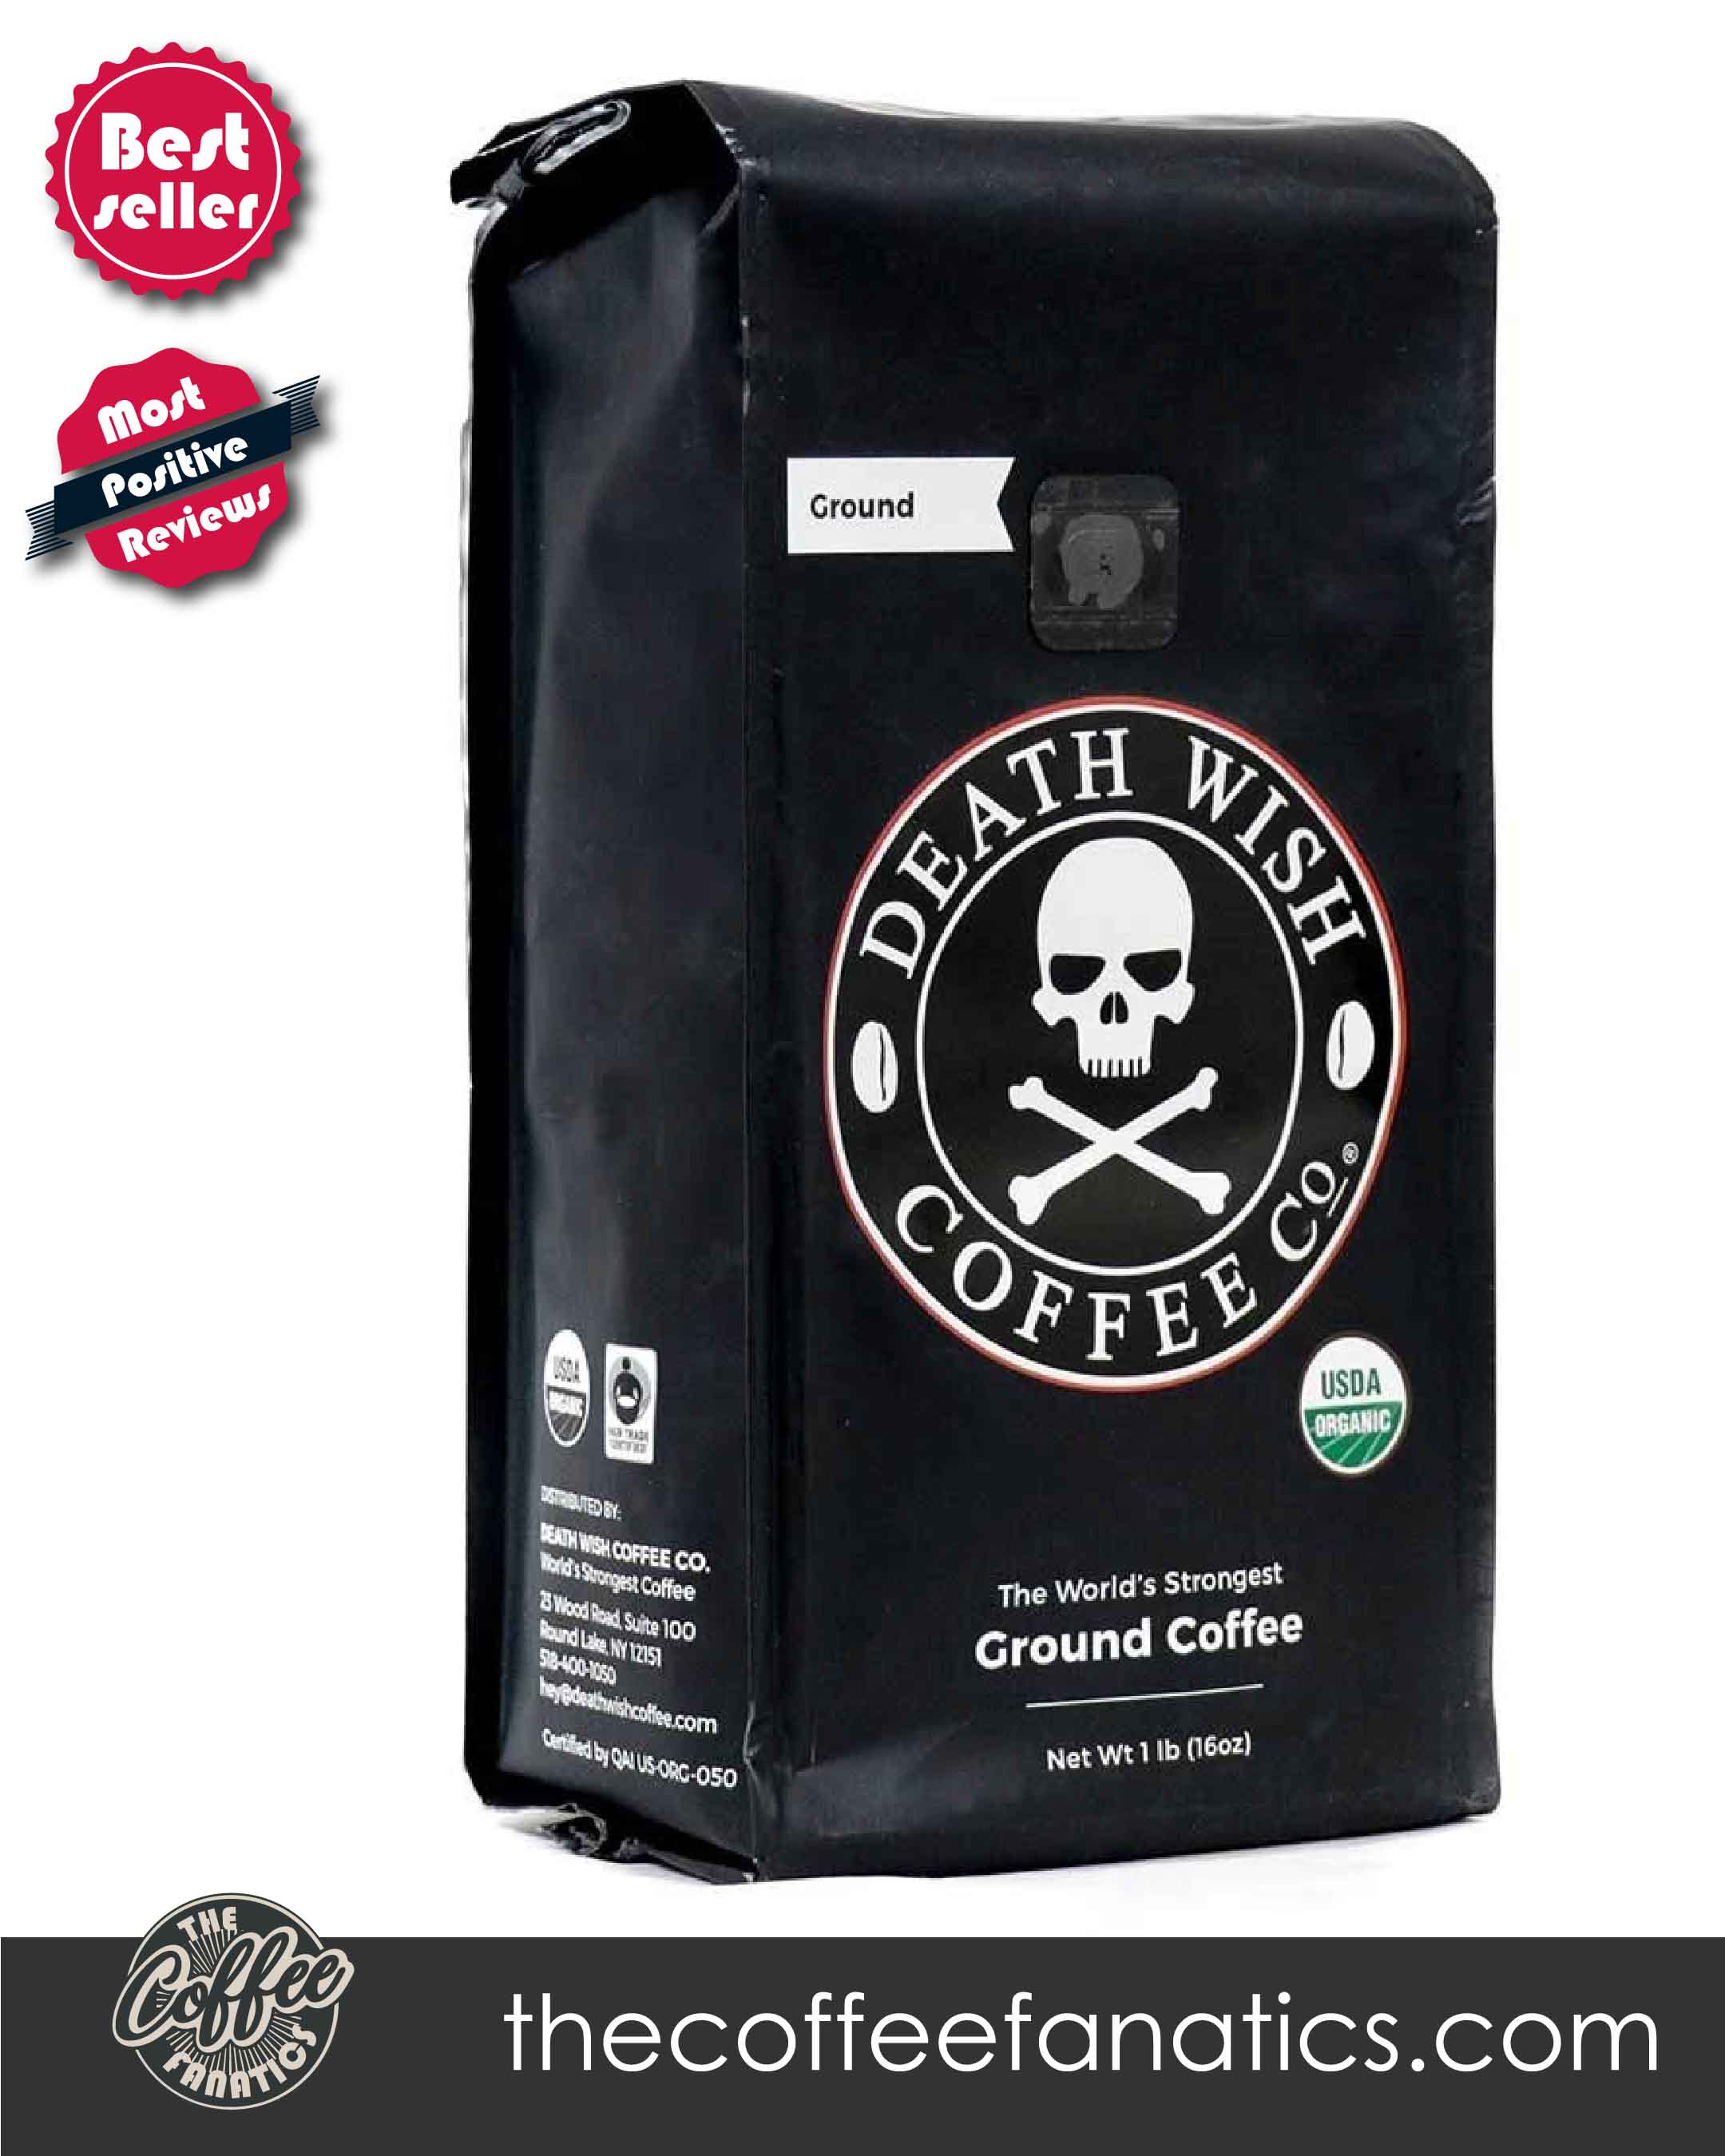 Хороший крепкий кофе. Кофе Death Wish Coffee. Самый крепкий кофе в мире Death Wish. Самый крепкий кофе в зернах. Самый мощный кофе.